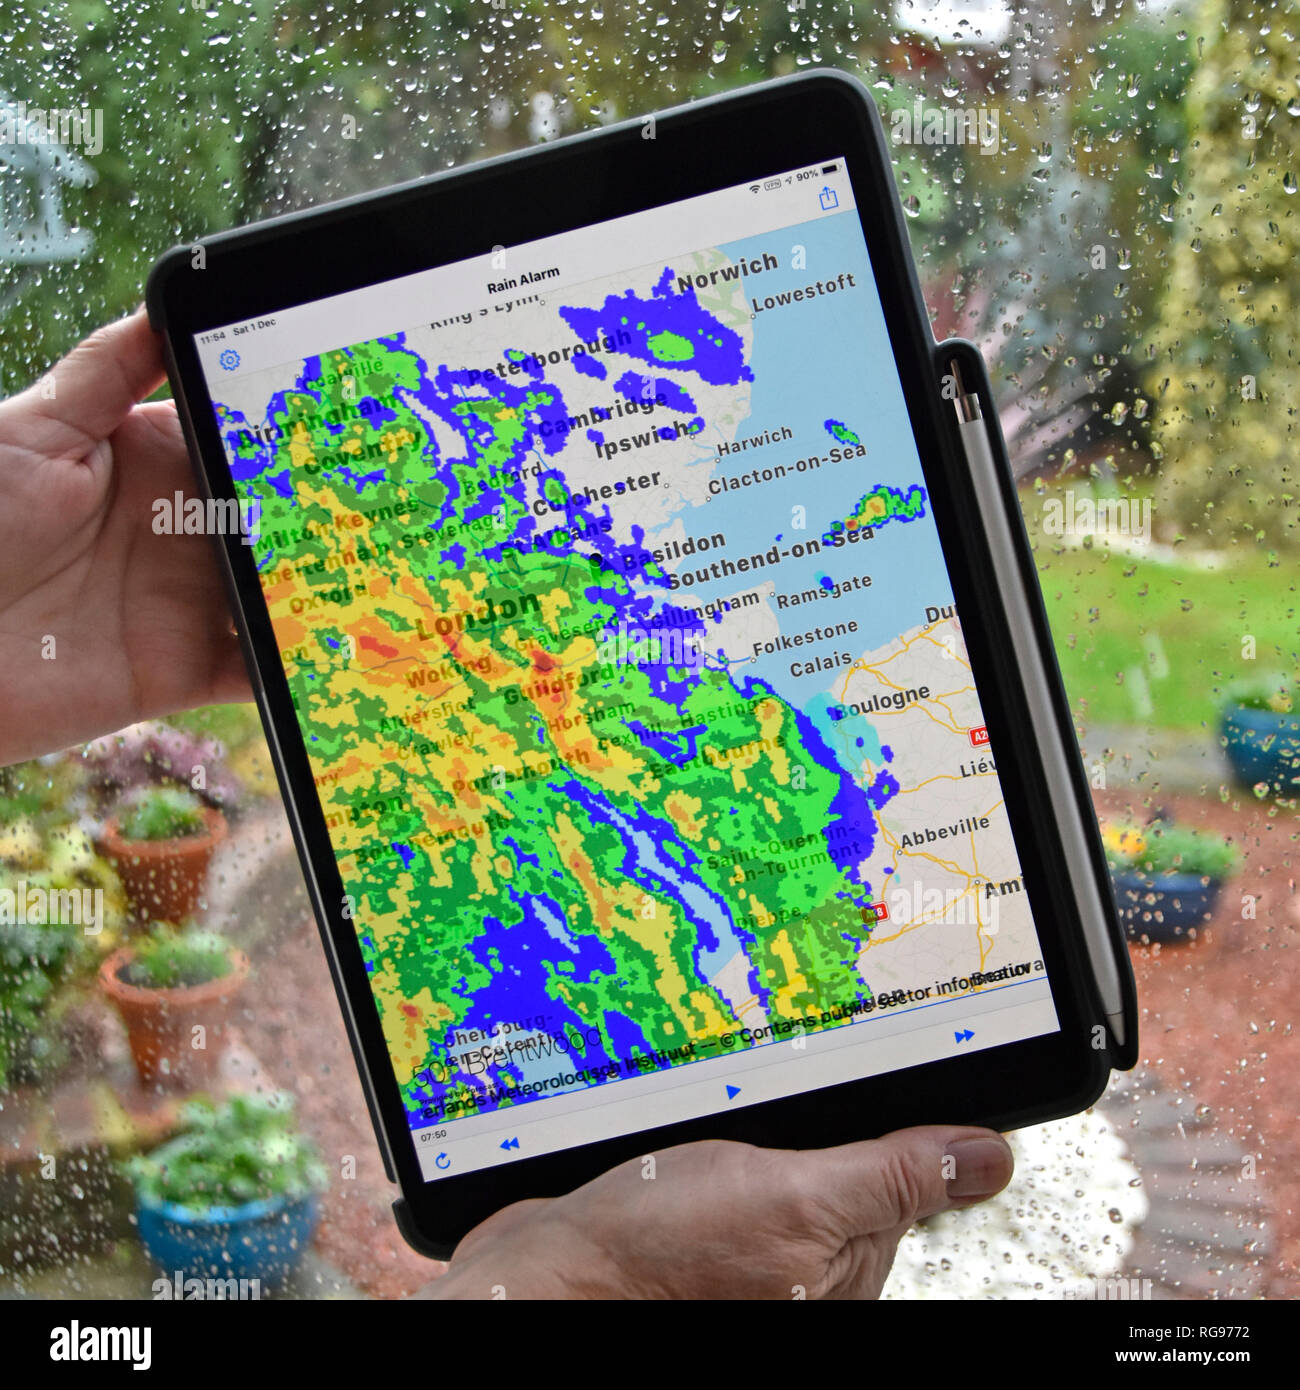 Frau Hände halten des ipad pro Tablette regen Alarm app nutzt Echtzeit Farbe radardaten überlagernden Niederschlag auf der lokalen Karte regnerische Wetter auf Fenster Essex UK Stockfoto